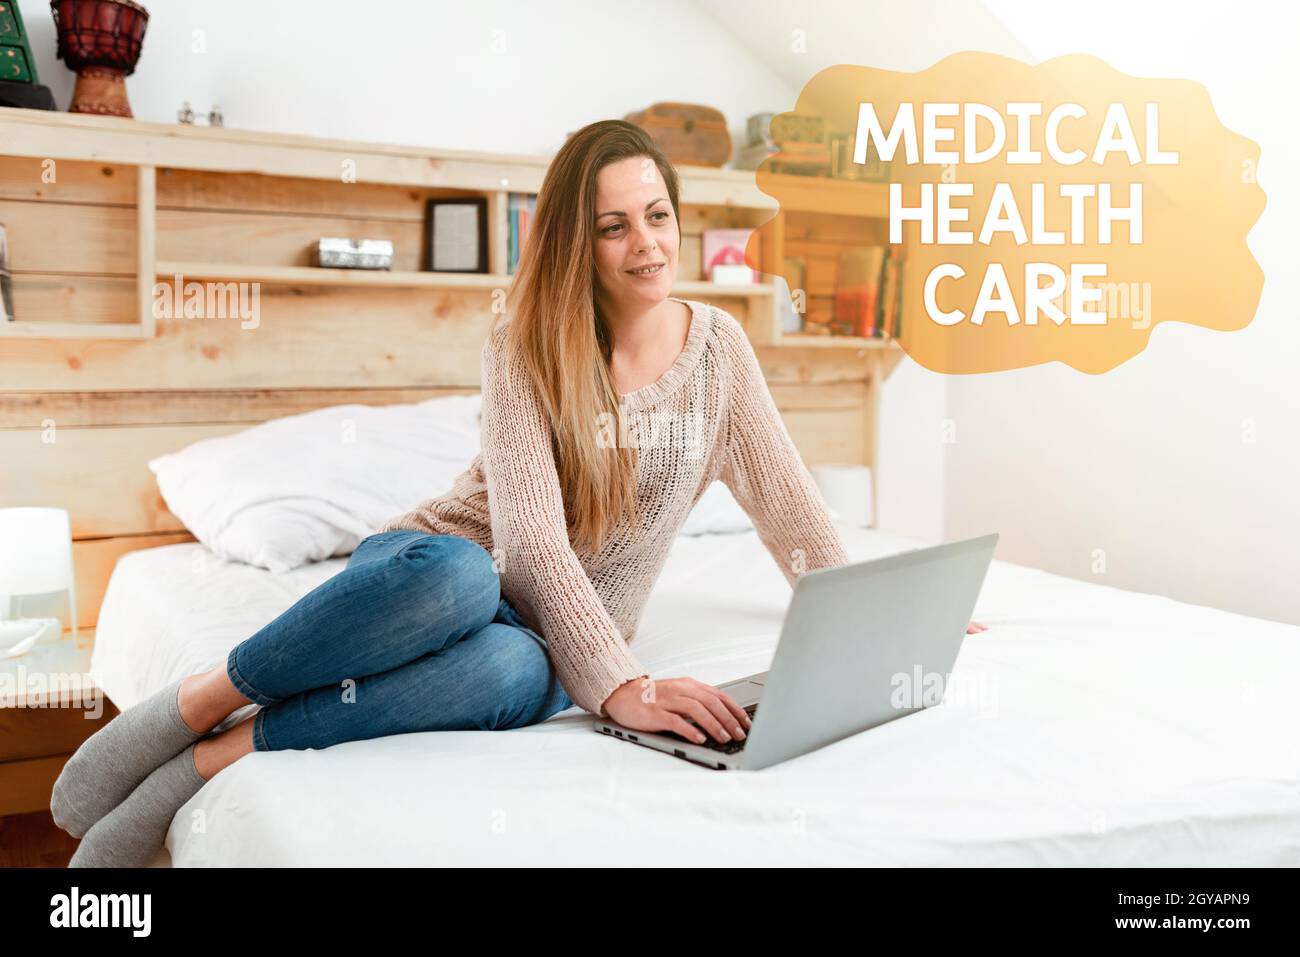 Textschild zeigt medizinische Gesundheitsversorgung, konzeptuelle Foto Wiederherstellung unseres körperlichen und geistigen Wohlbefindens Online-Dokumentationen, spielen Intern Stockfoto